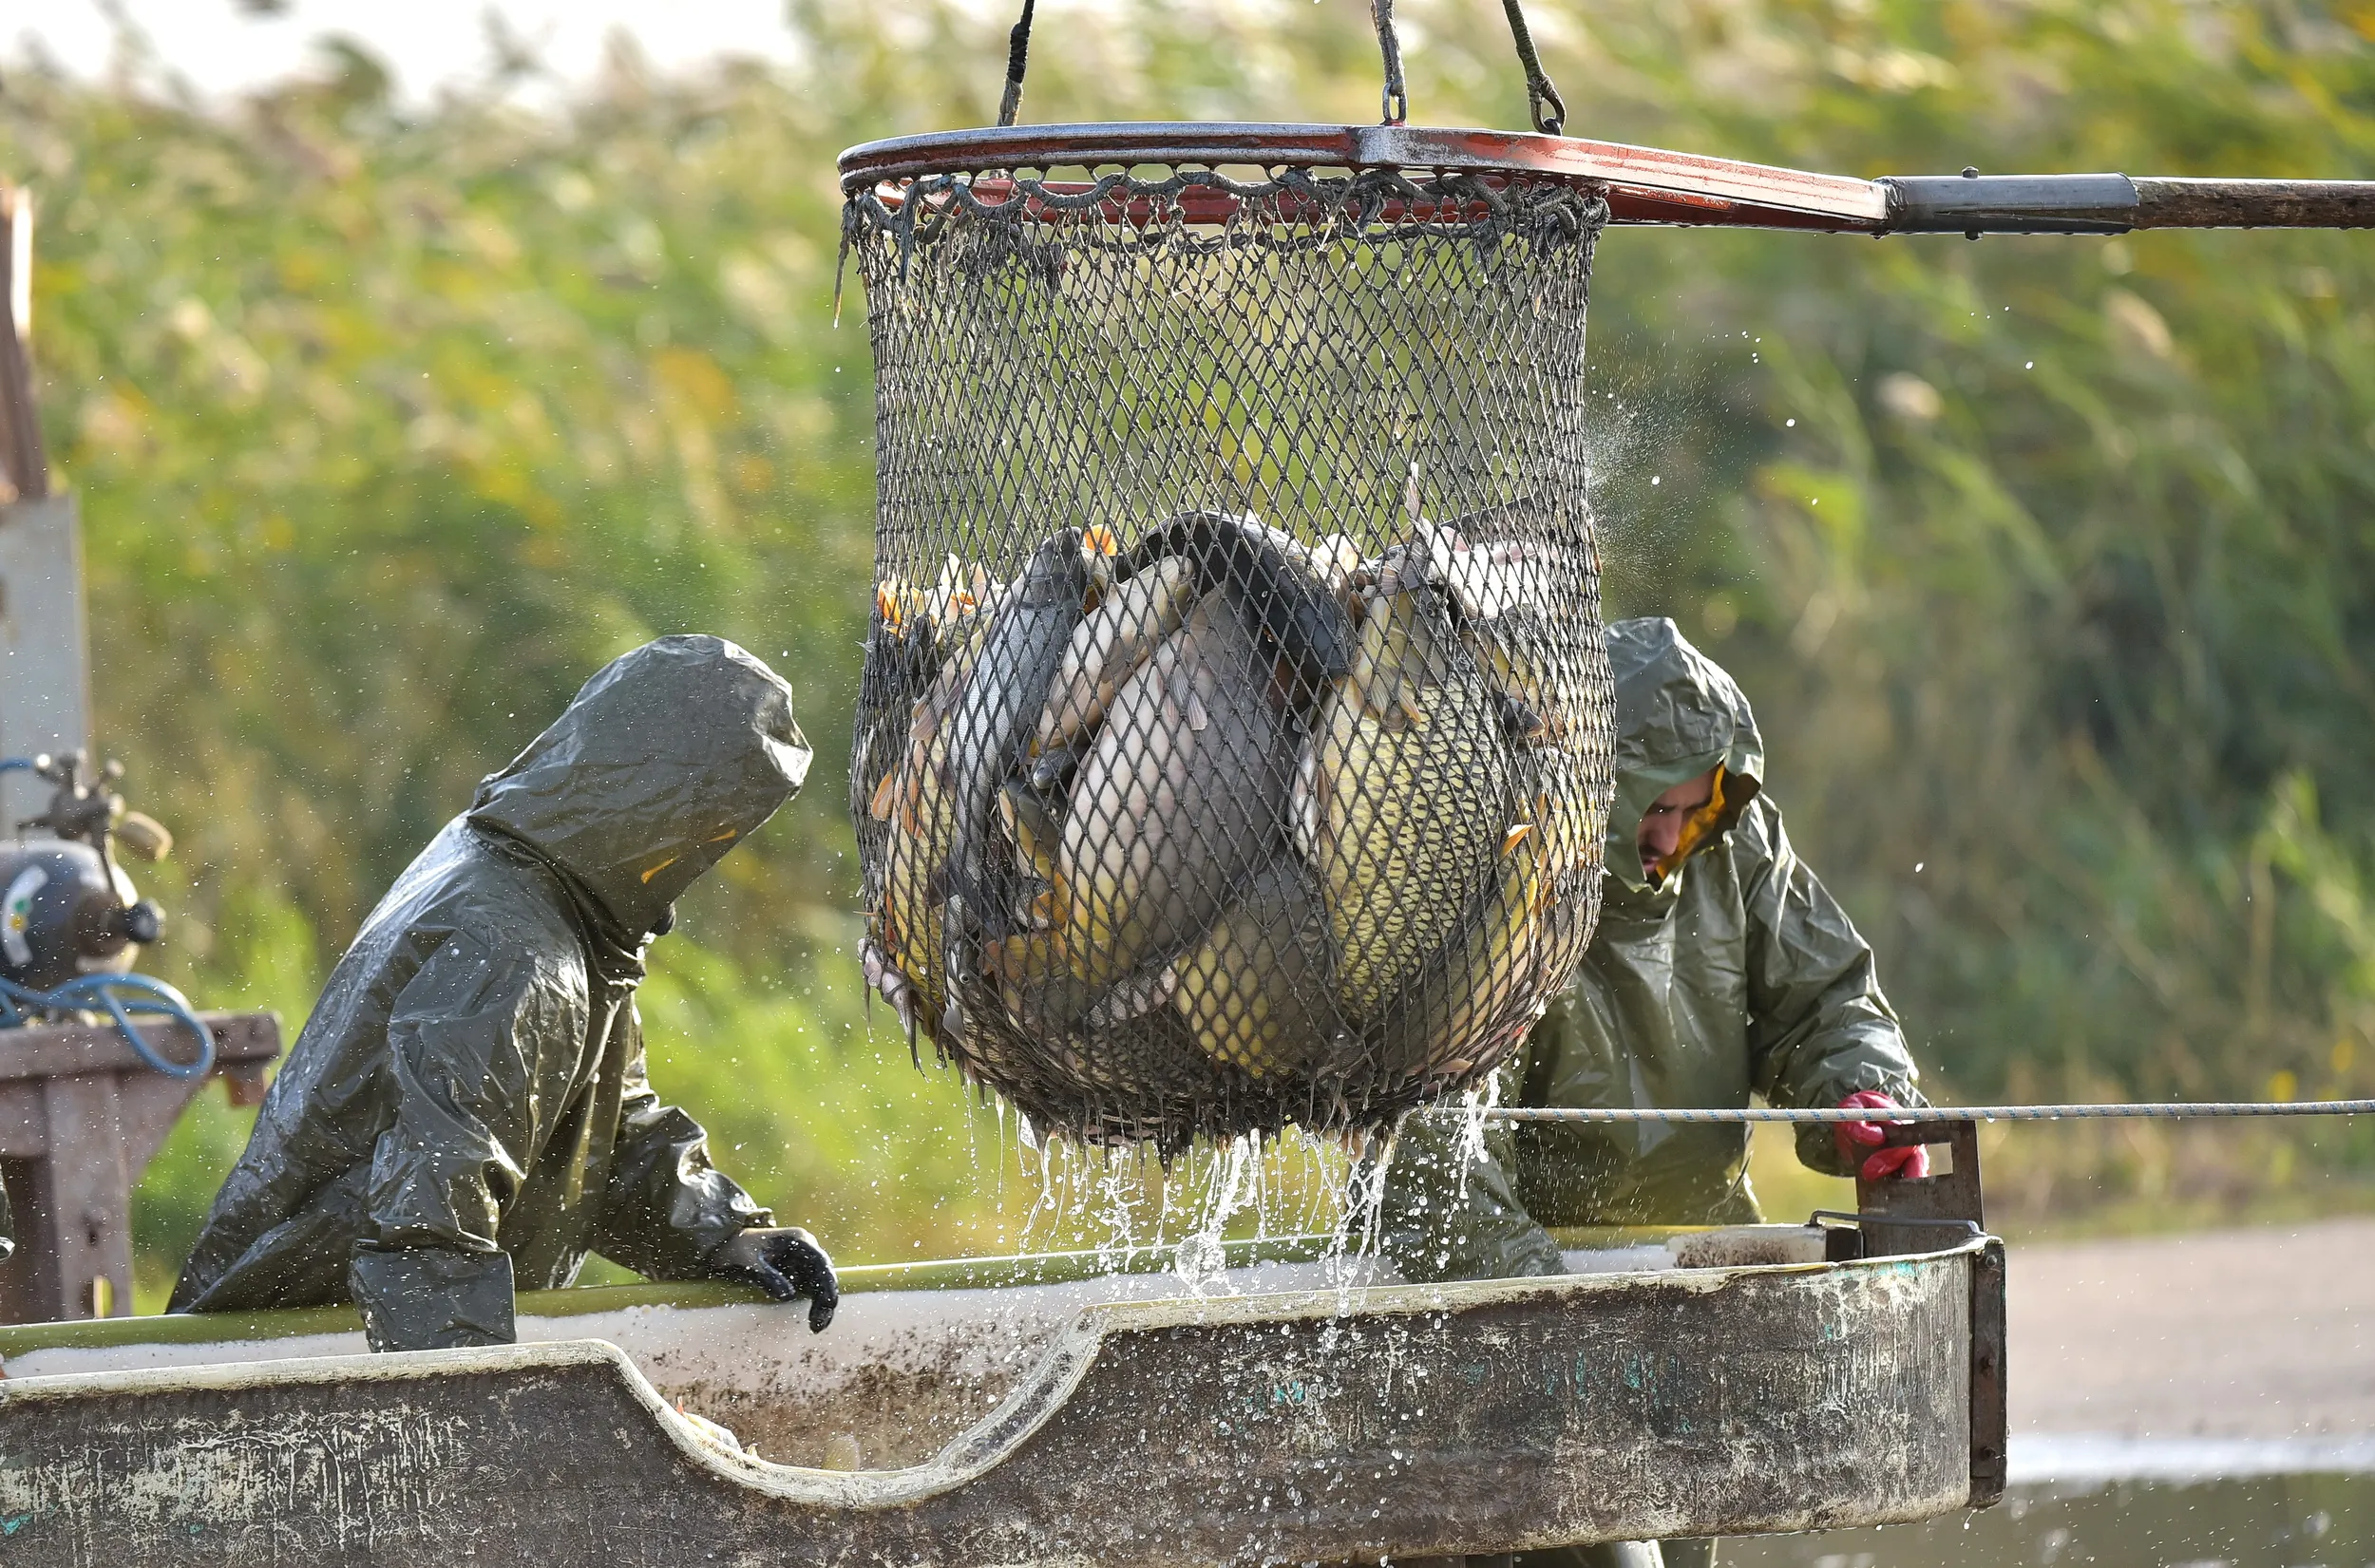 Dva ribolovca u zelenim kabanicama sa kapuljačom iznad kojih visi mreža puna šarana iz koje curi voda se pripremaju da je sortiraju.